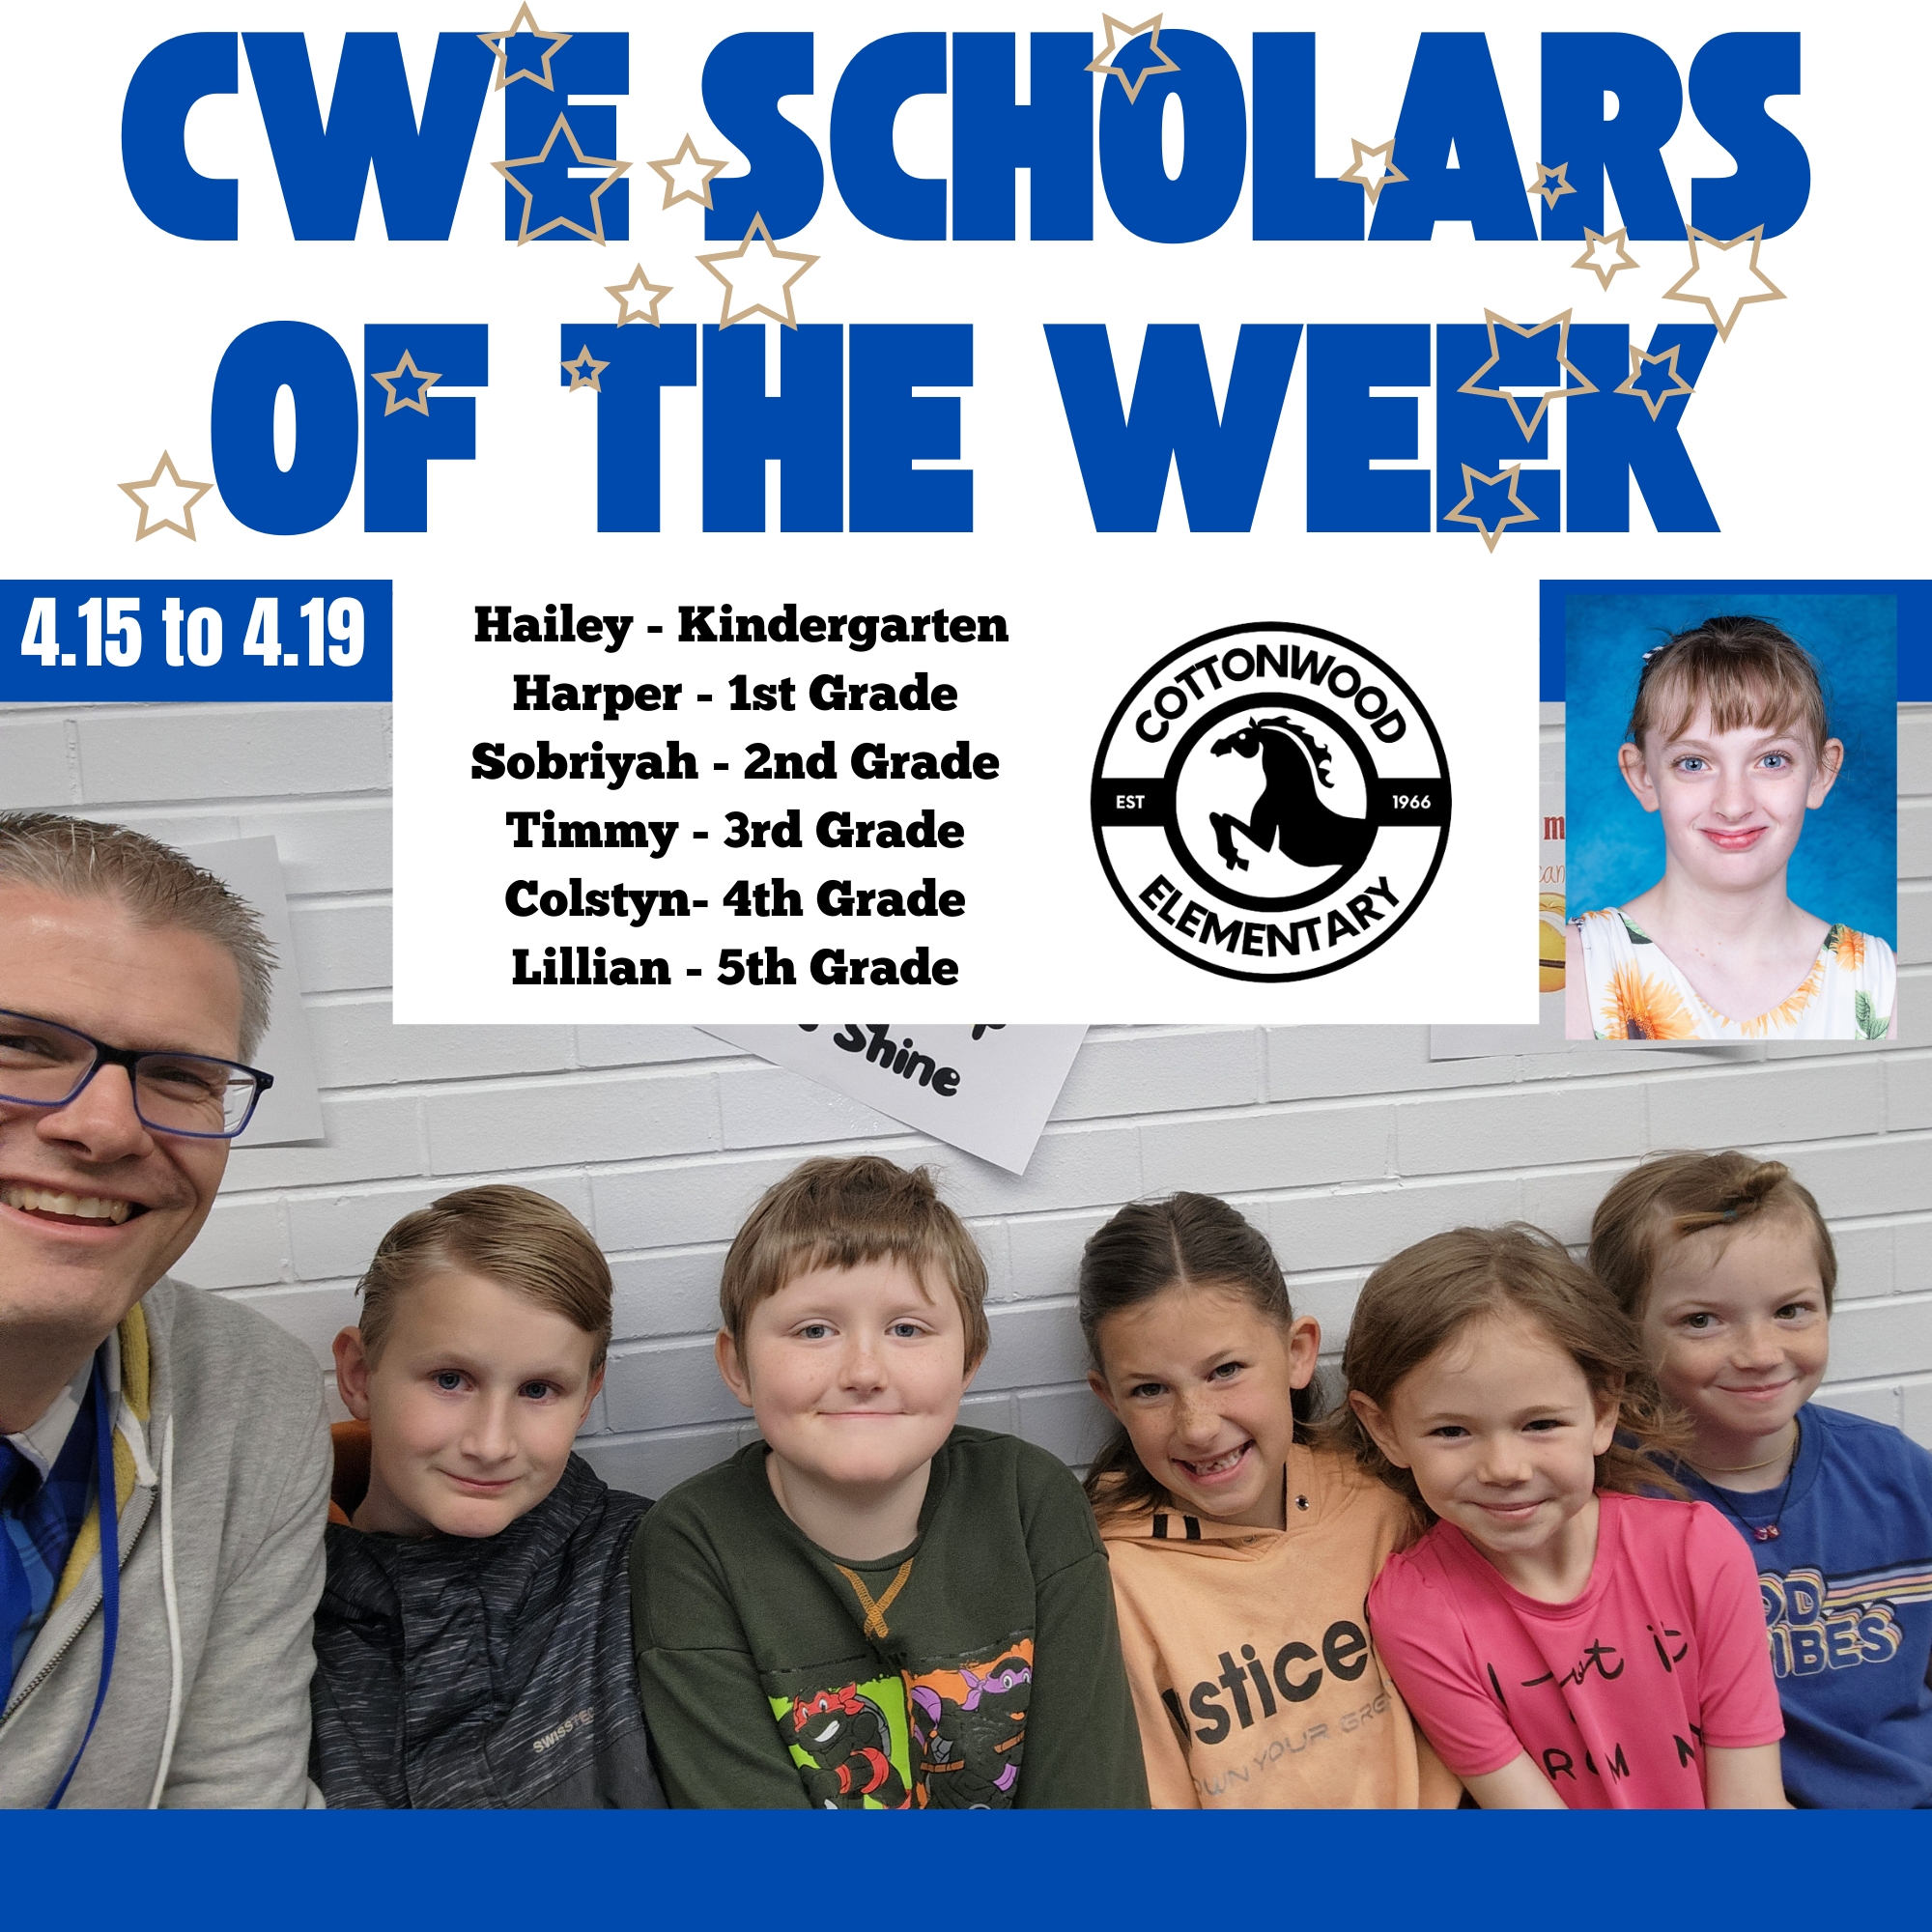 CWE-Scholars-of-the-Week-4.15-to-4.19.jpg